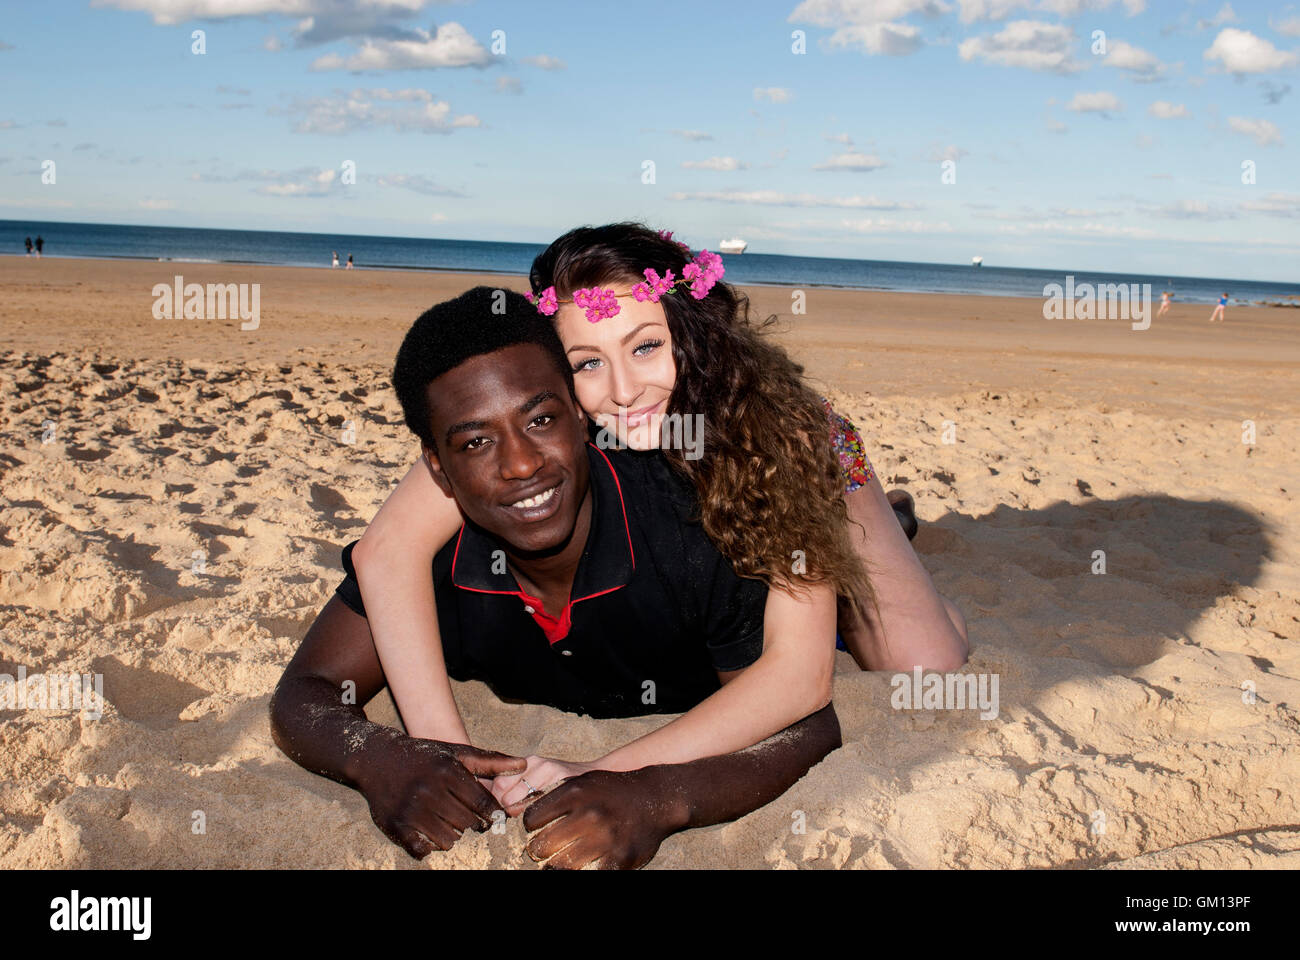 Attraente muticultural razza mista giovane giacente sulla sabbia in spiaggia costeggiata a ridere felice avendo divertimento Foto Stock